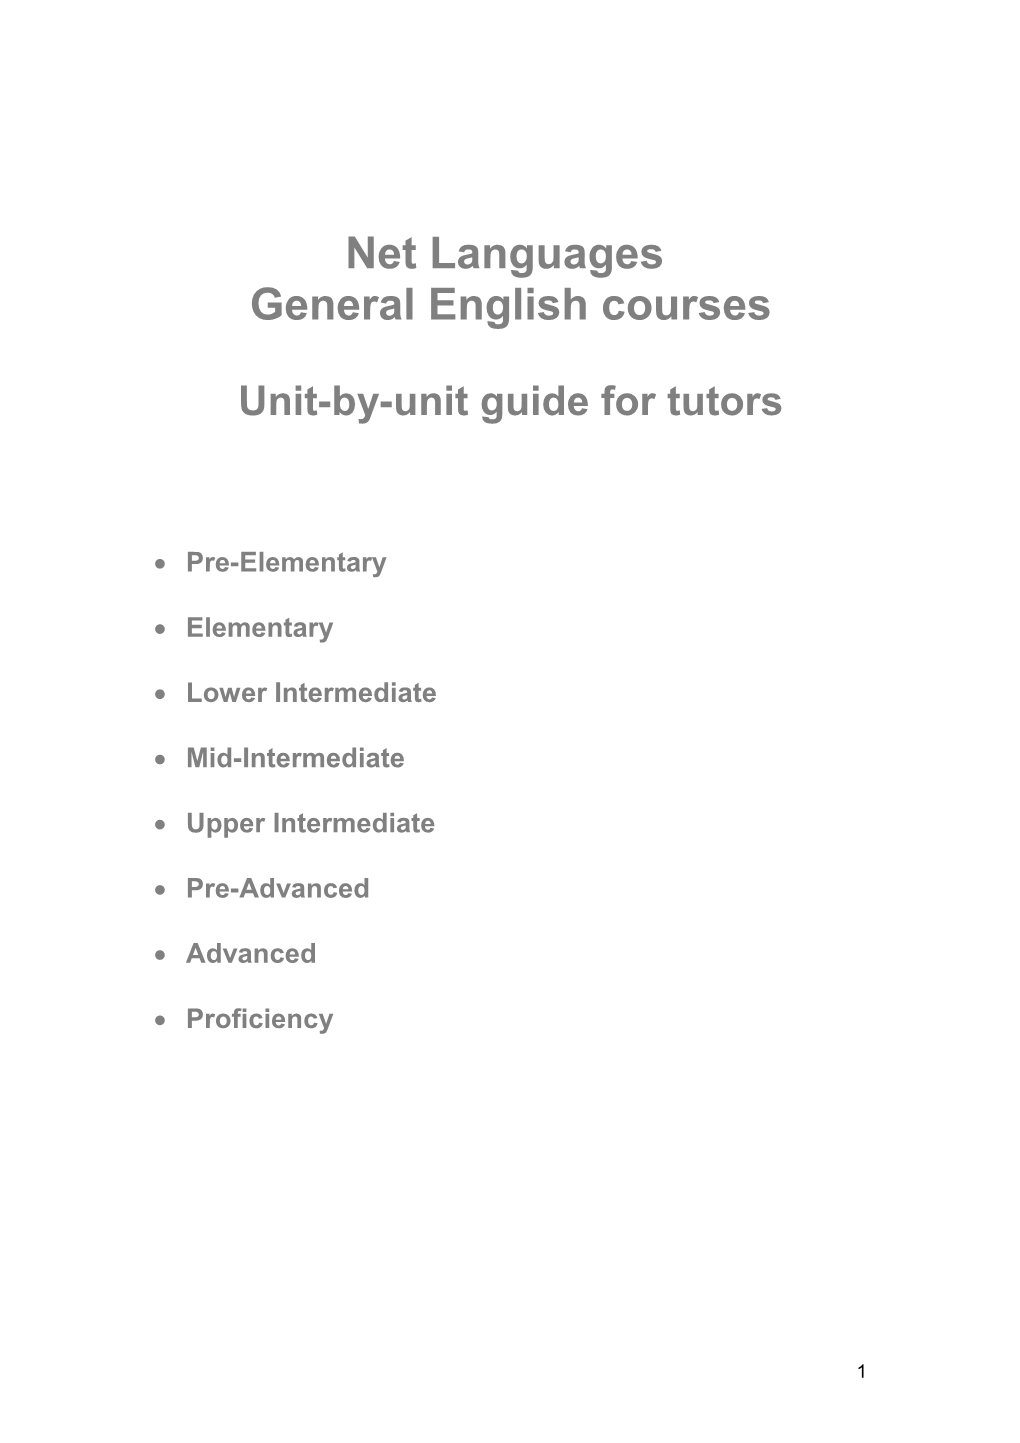 B: Unit-By-Unit Guide for Tutors